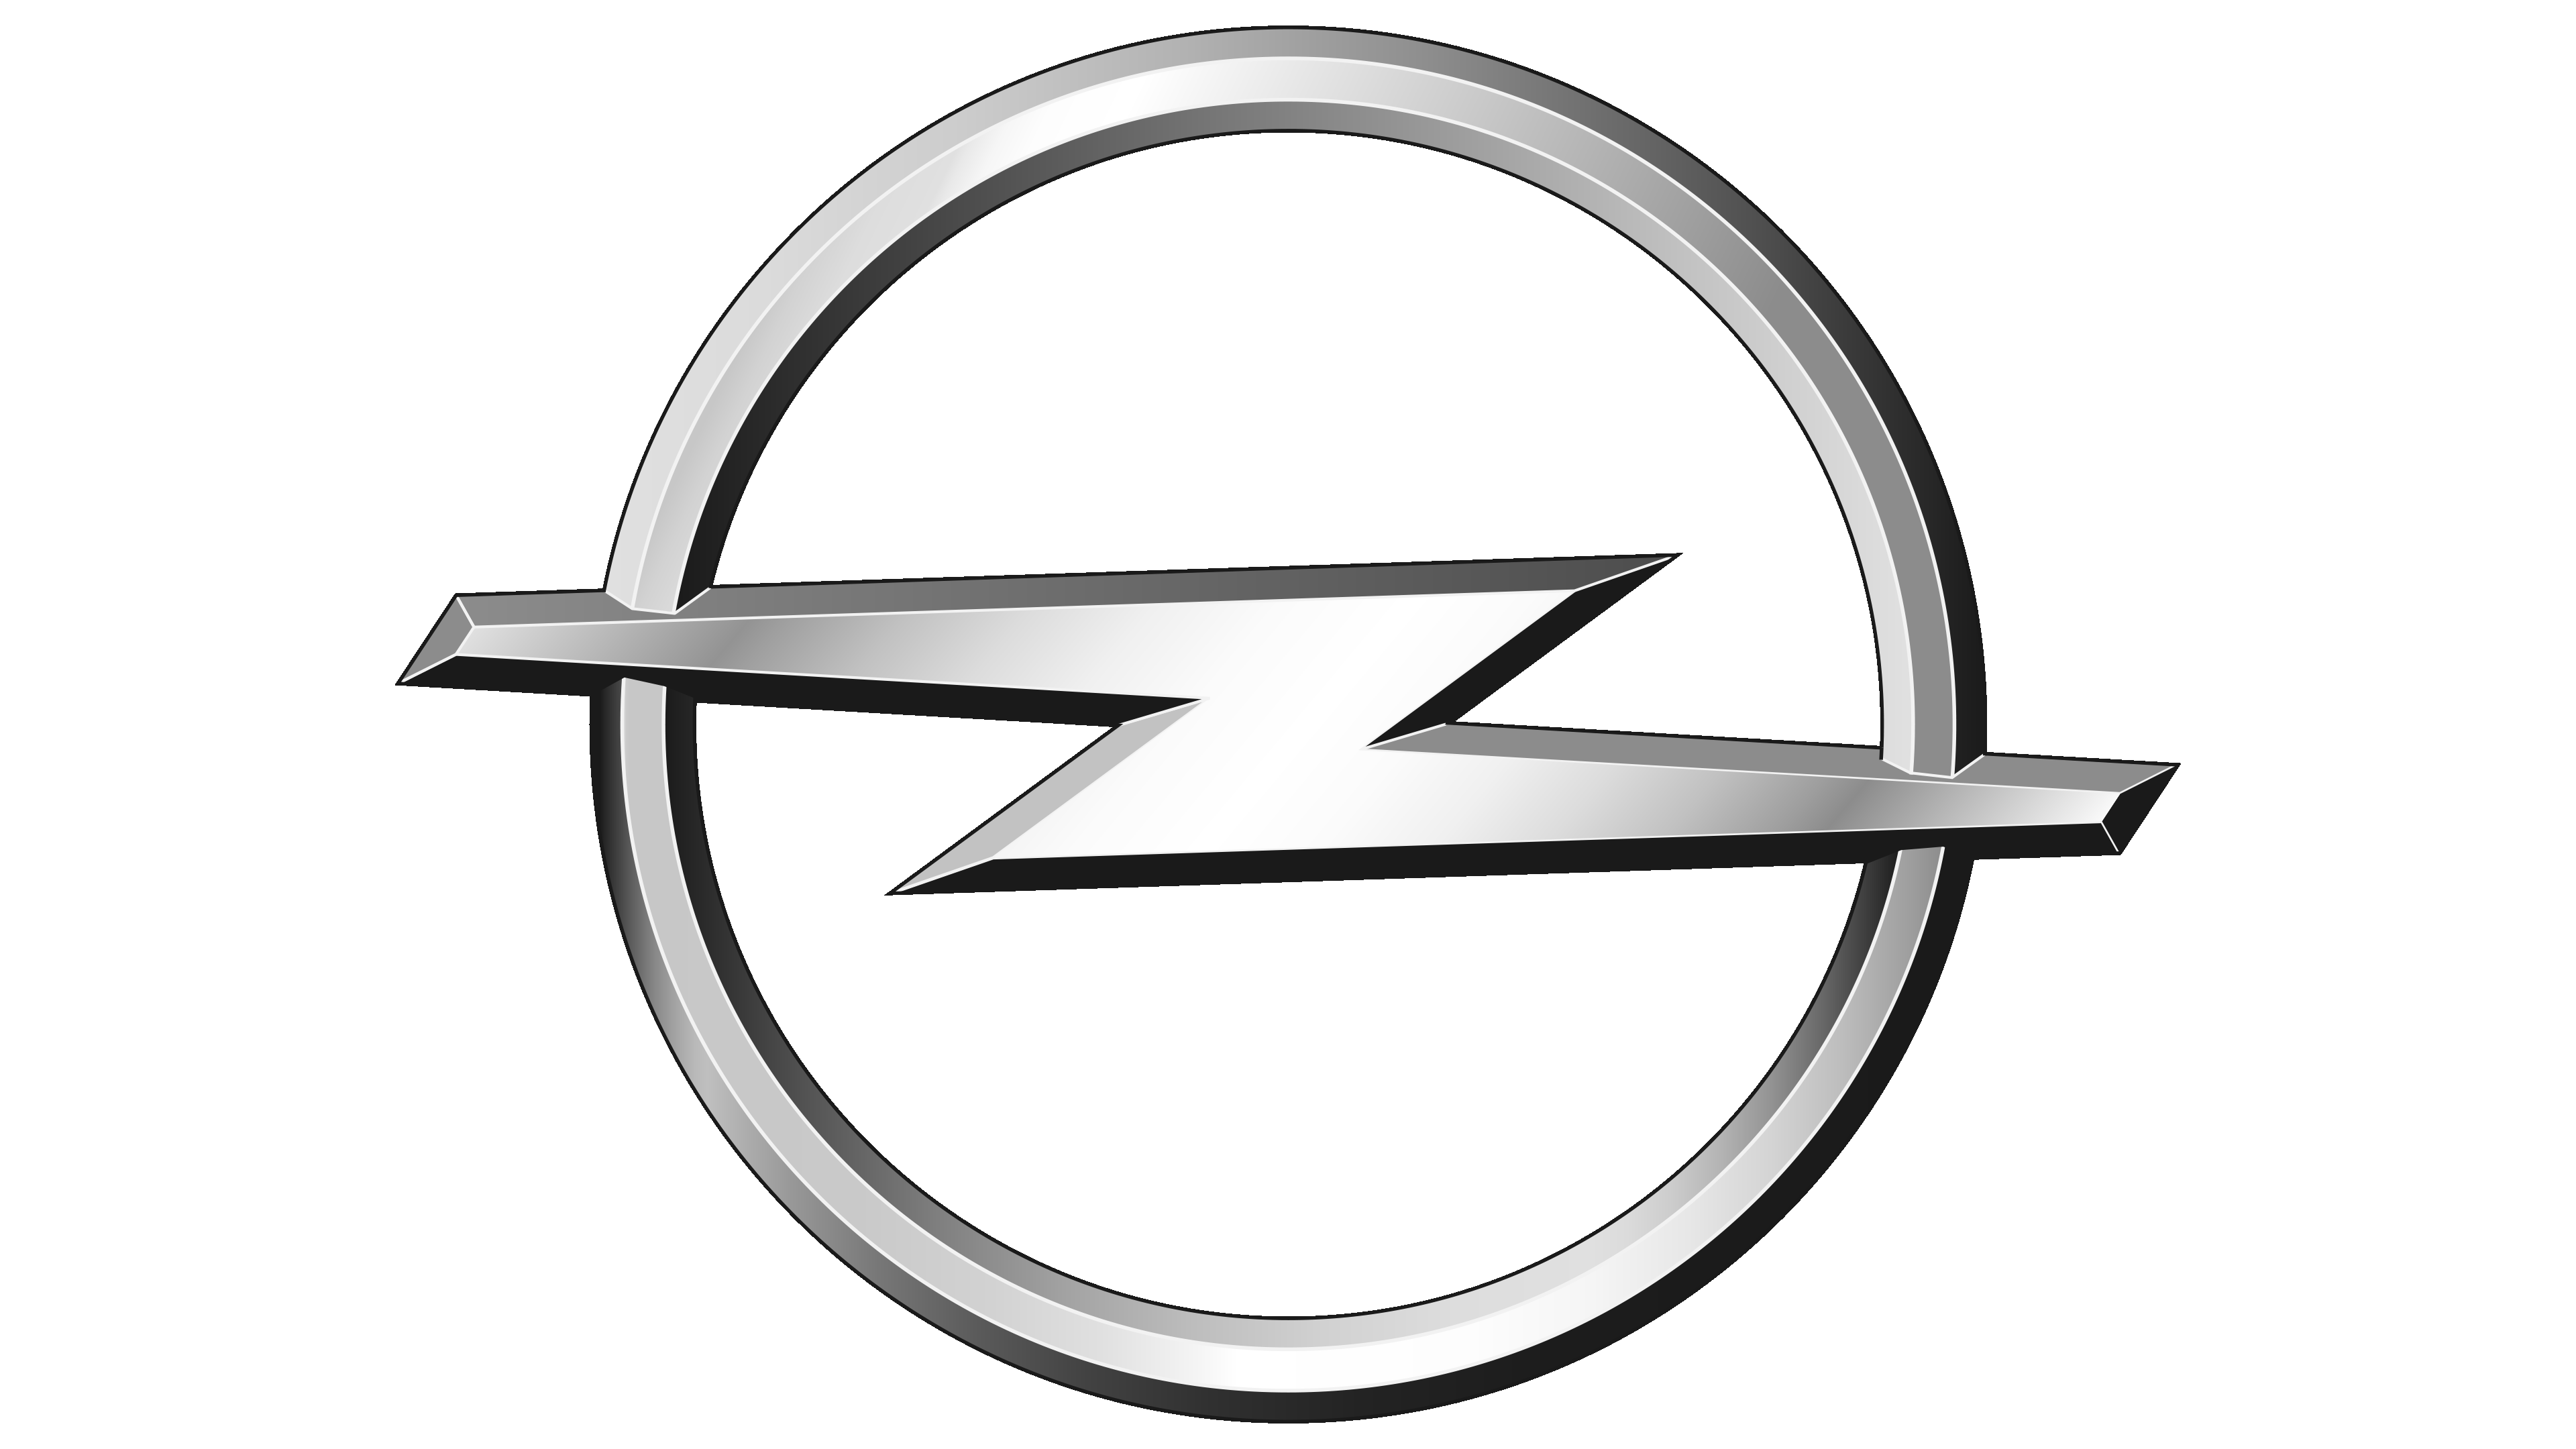 Opel  Opel, Car logos, ? logo